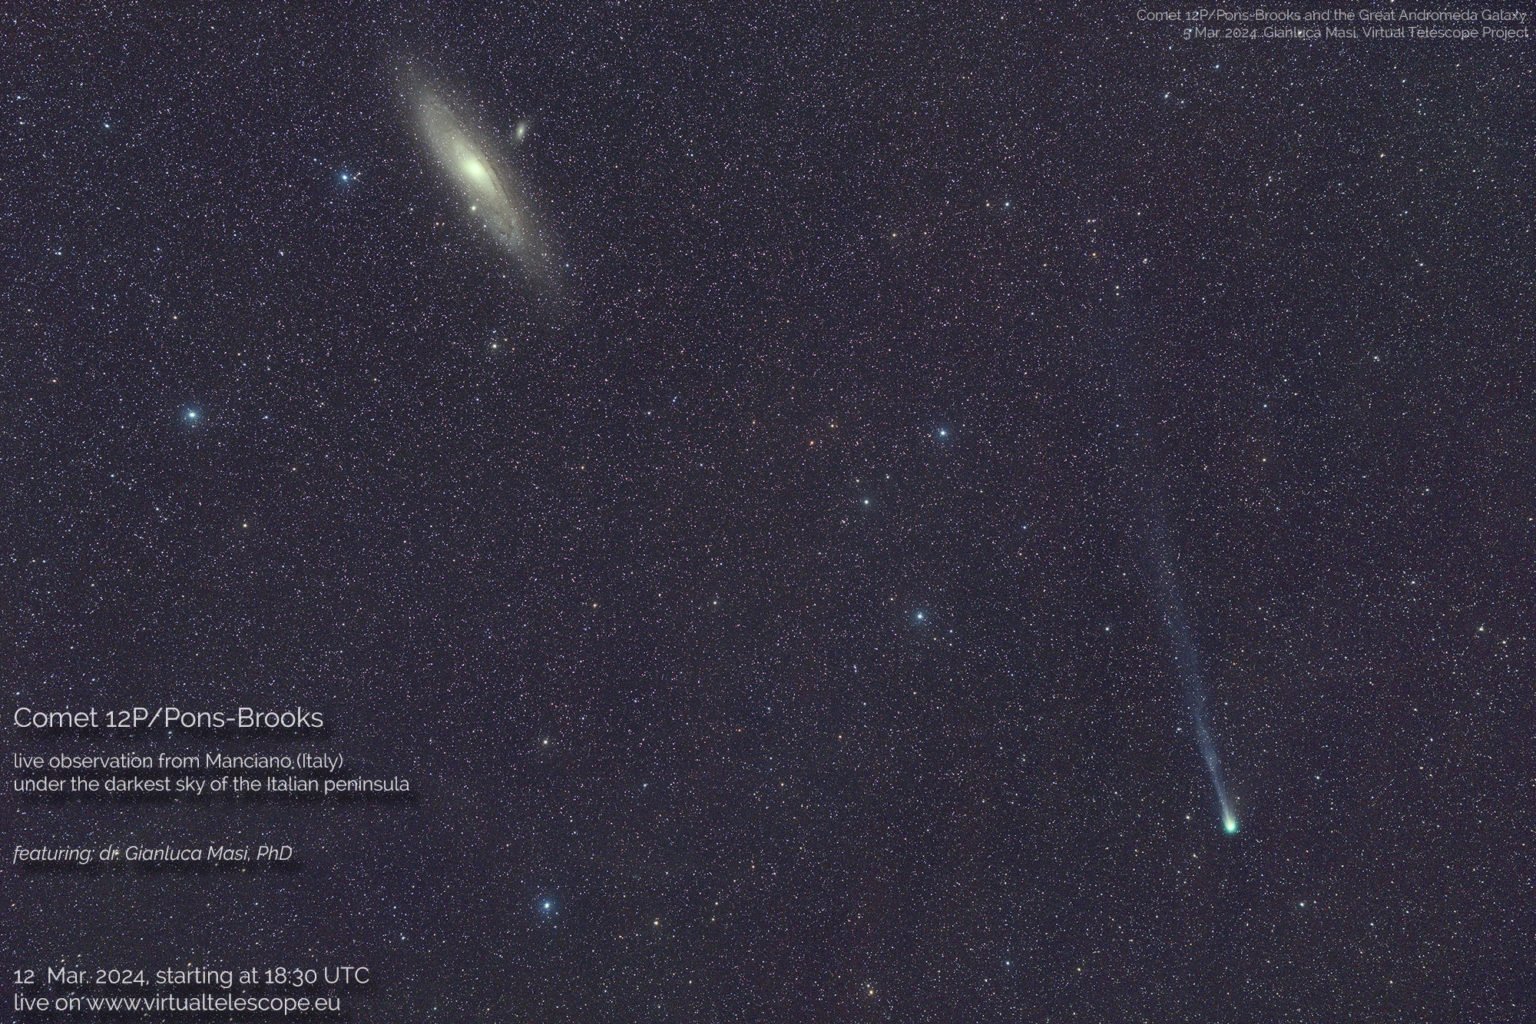 Fermo immagine della Cometa 12/P ripreso dal portale "Virtual Telescope Project"